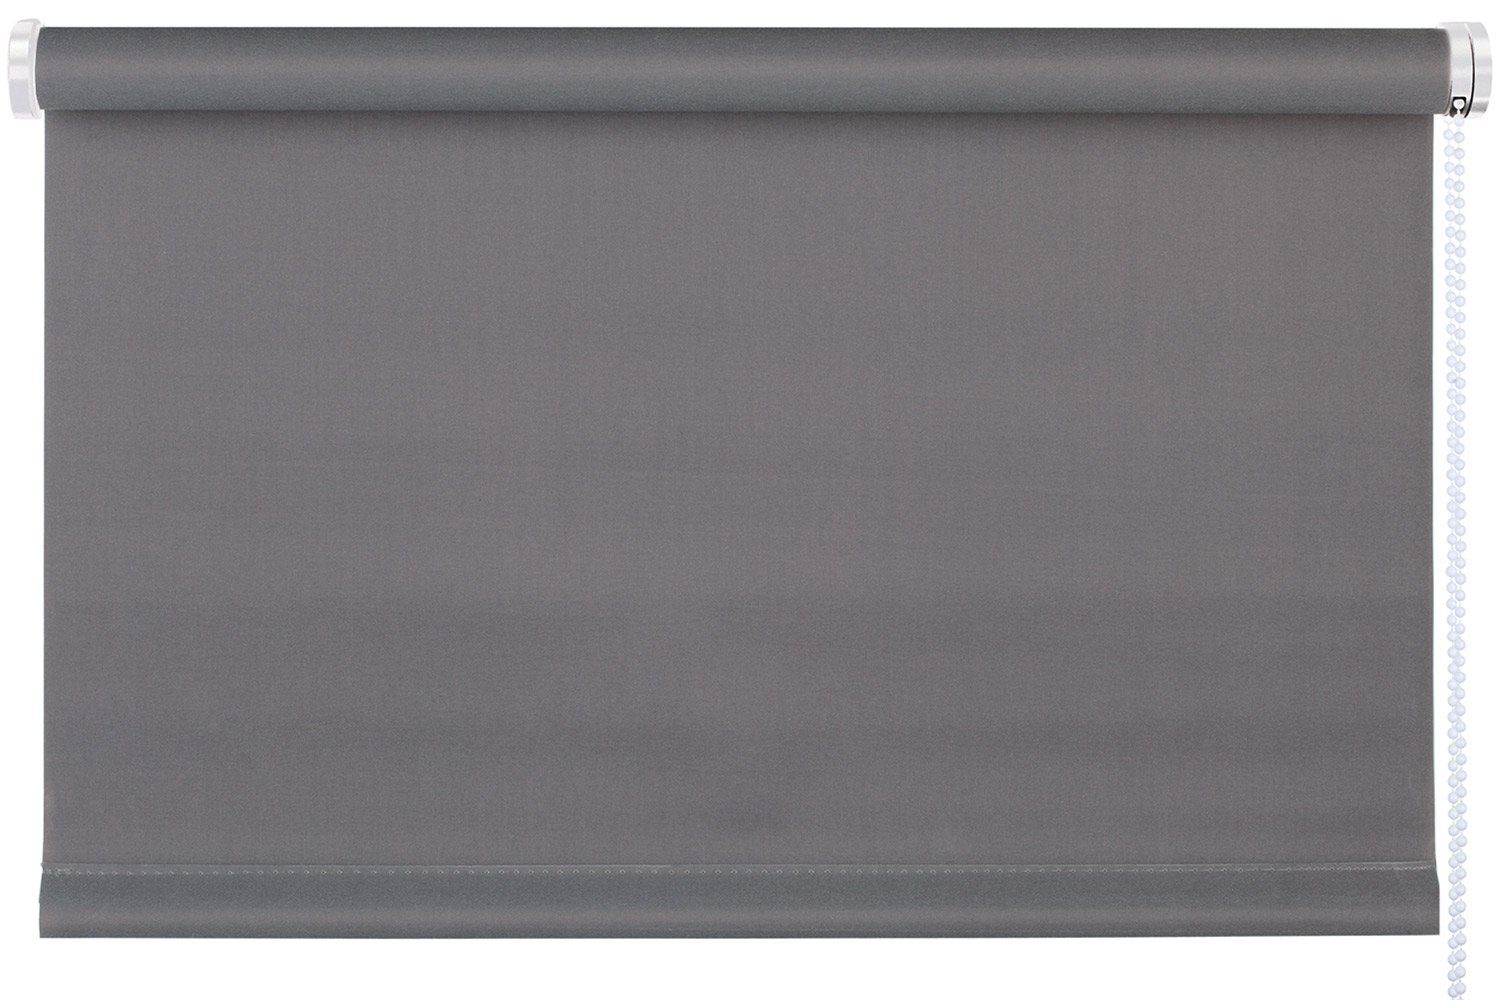 Rollo TREND, Design Rollo, Grau, B 75 x H 150 cm, mydeco, blickdicht, ohne Bohren, Klemmfix